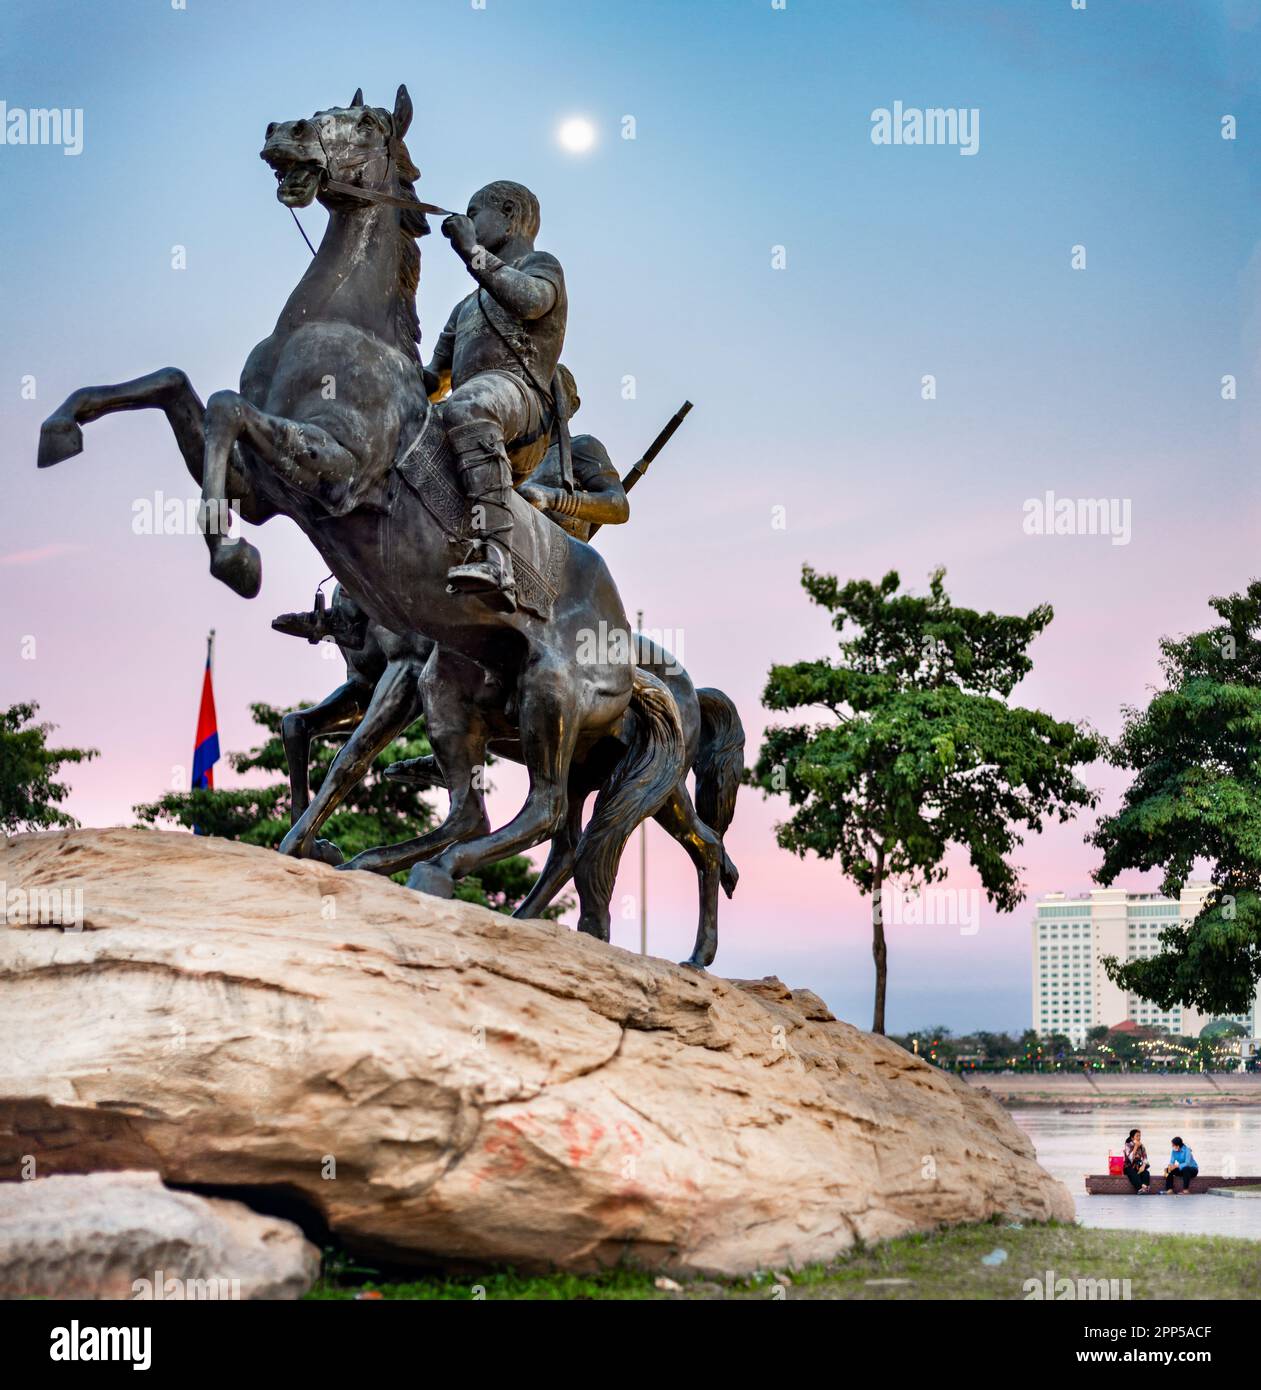 Historisches Denkmal von zwei lebensgroßen Pferden, mit ihren Khmer-Reitern, lebensgroß, hoch oben auf einem großen Felsen. Nach Sonnenuntergang, wenn der Mond am Himmel hängt, über einem Stockfoto